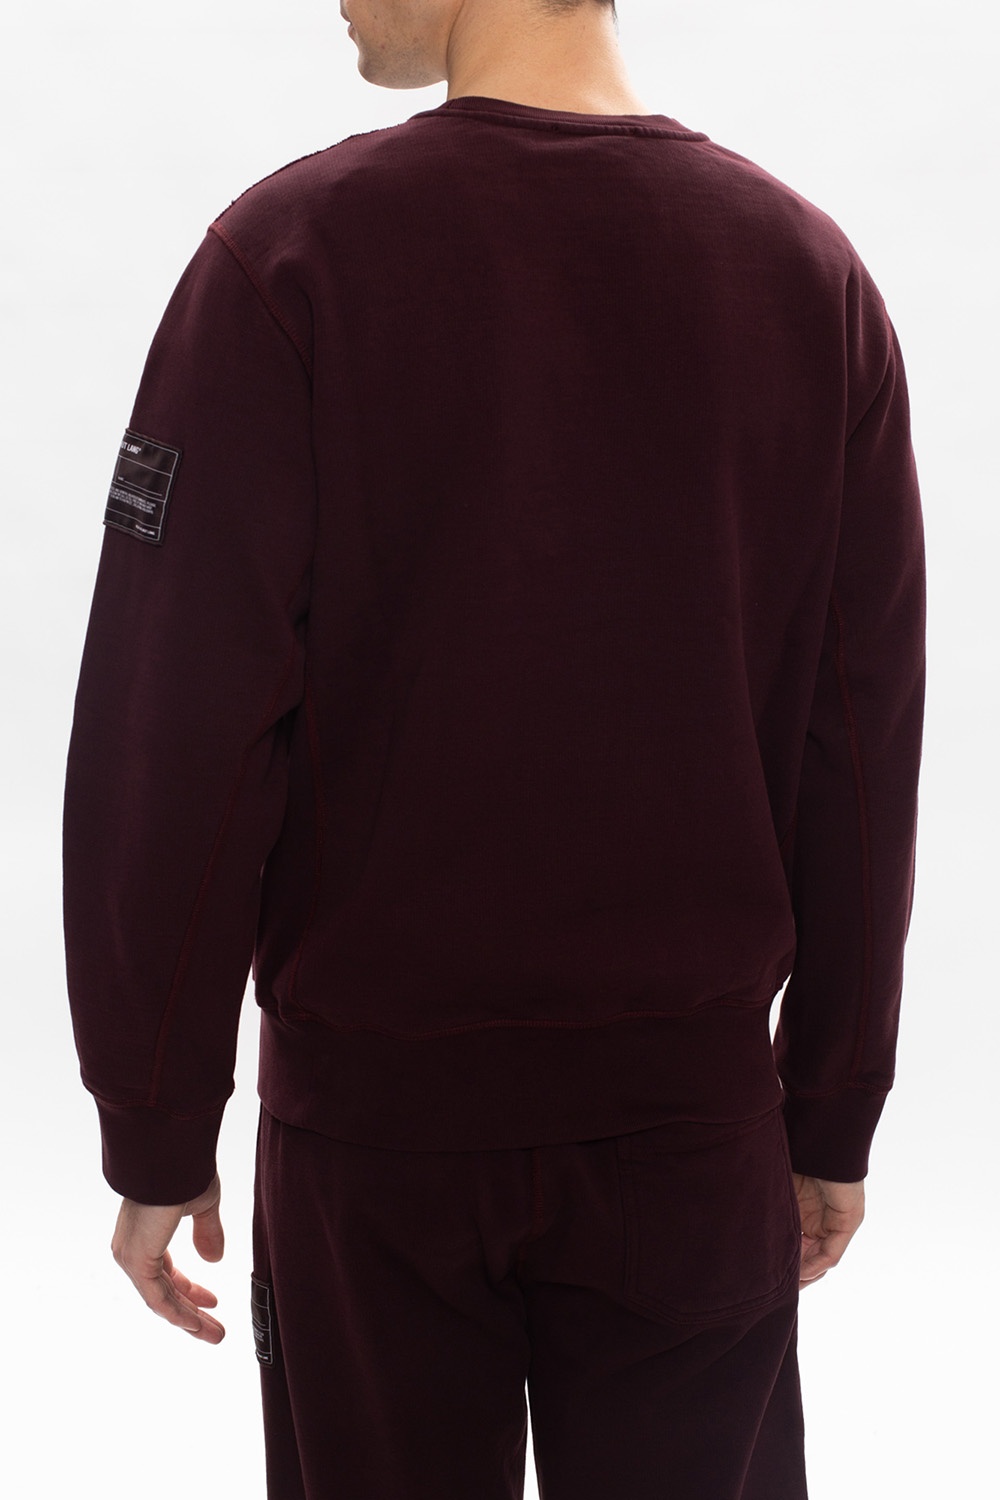 Helmut Lang Branded sweatshirt